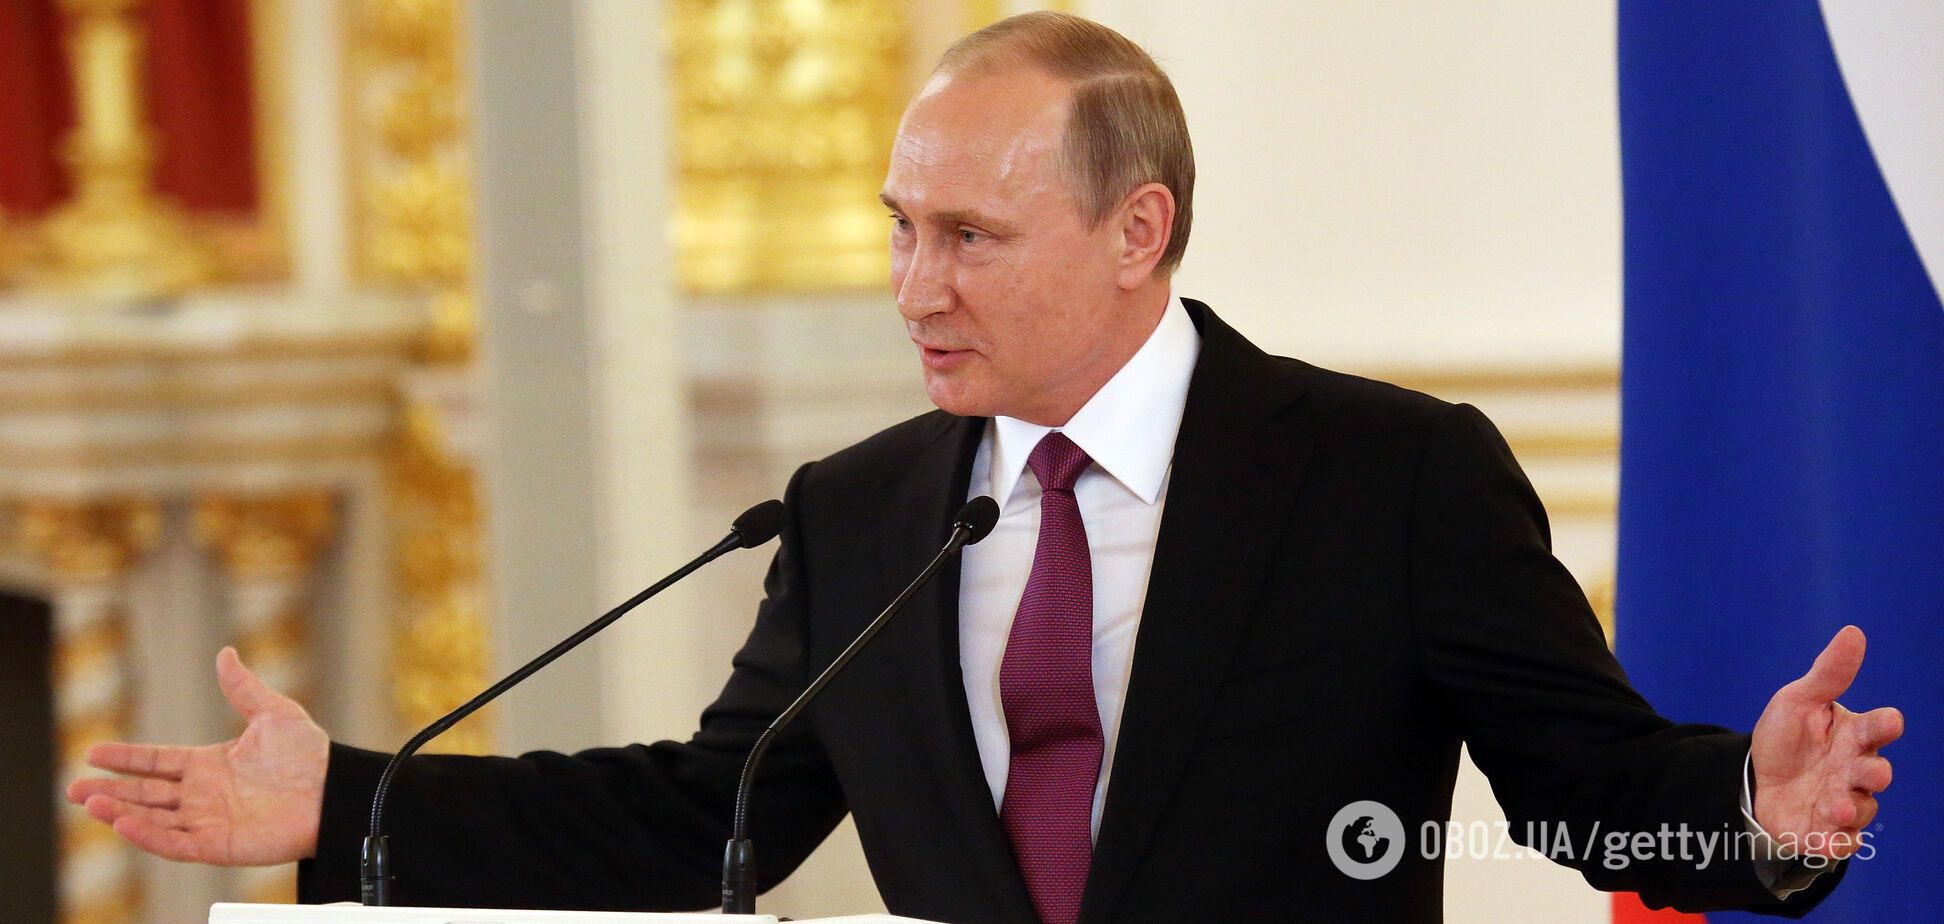 Кравчук спрогнозировал отстранение Путина от власти